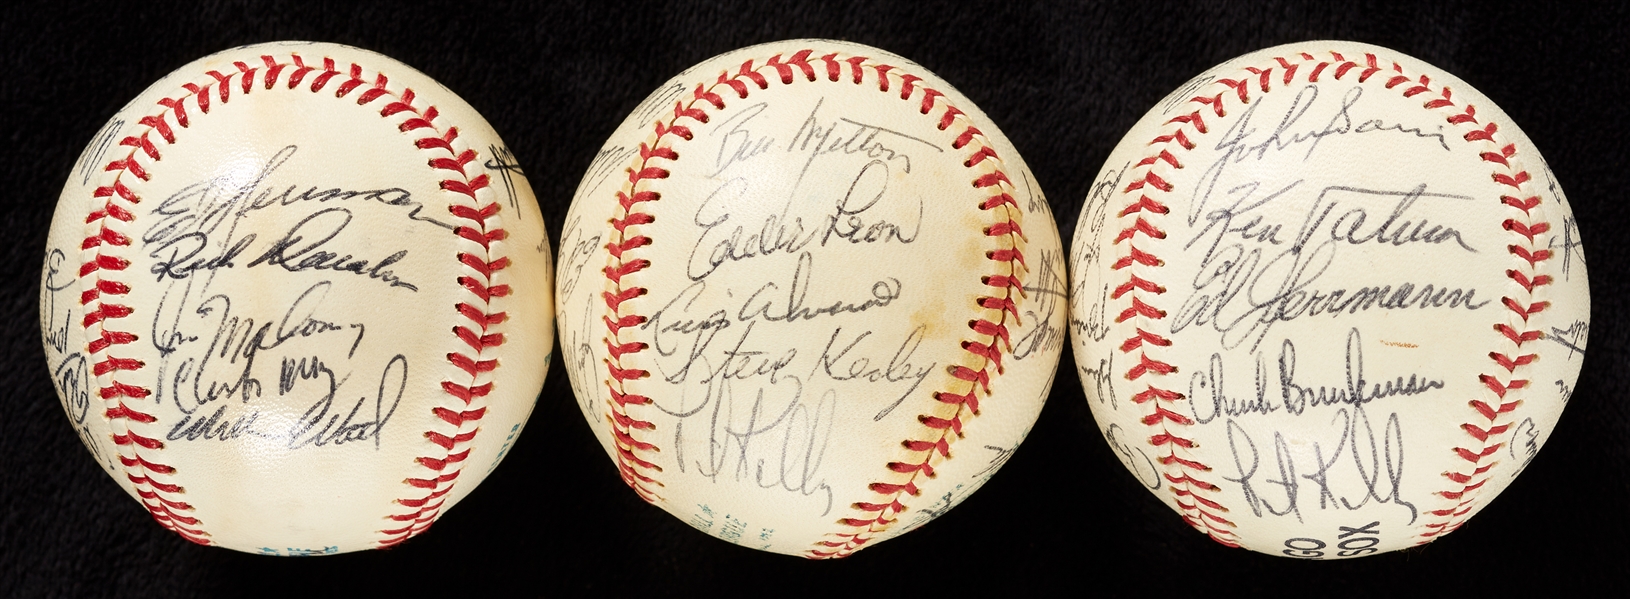 1972, 1973, 1974 Chicago White Sox Team-Signed Baseballs (3)